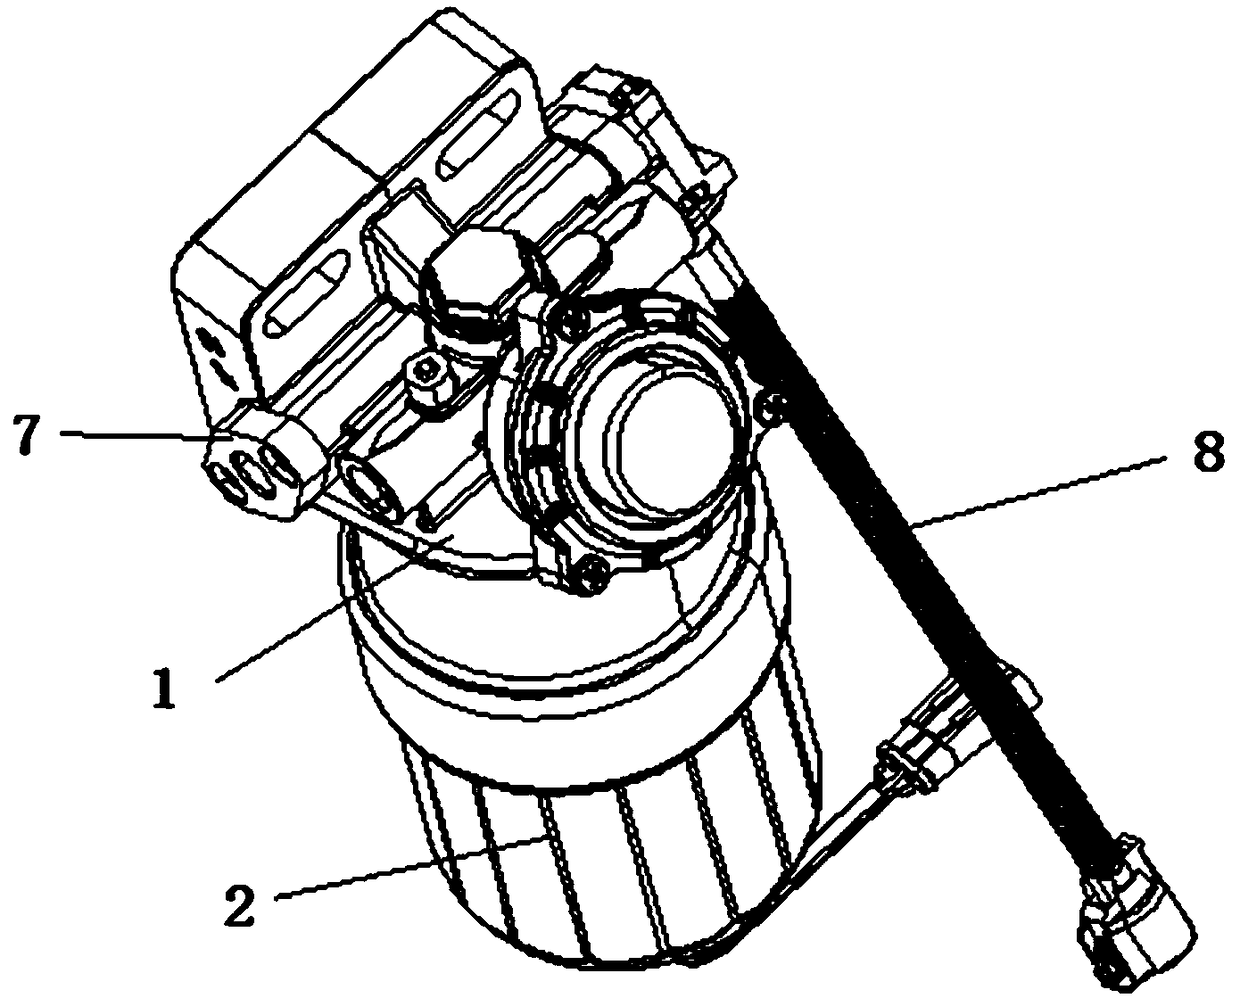 Rod-type heating diesel oil filter